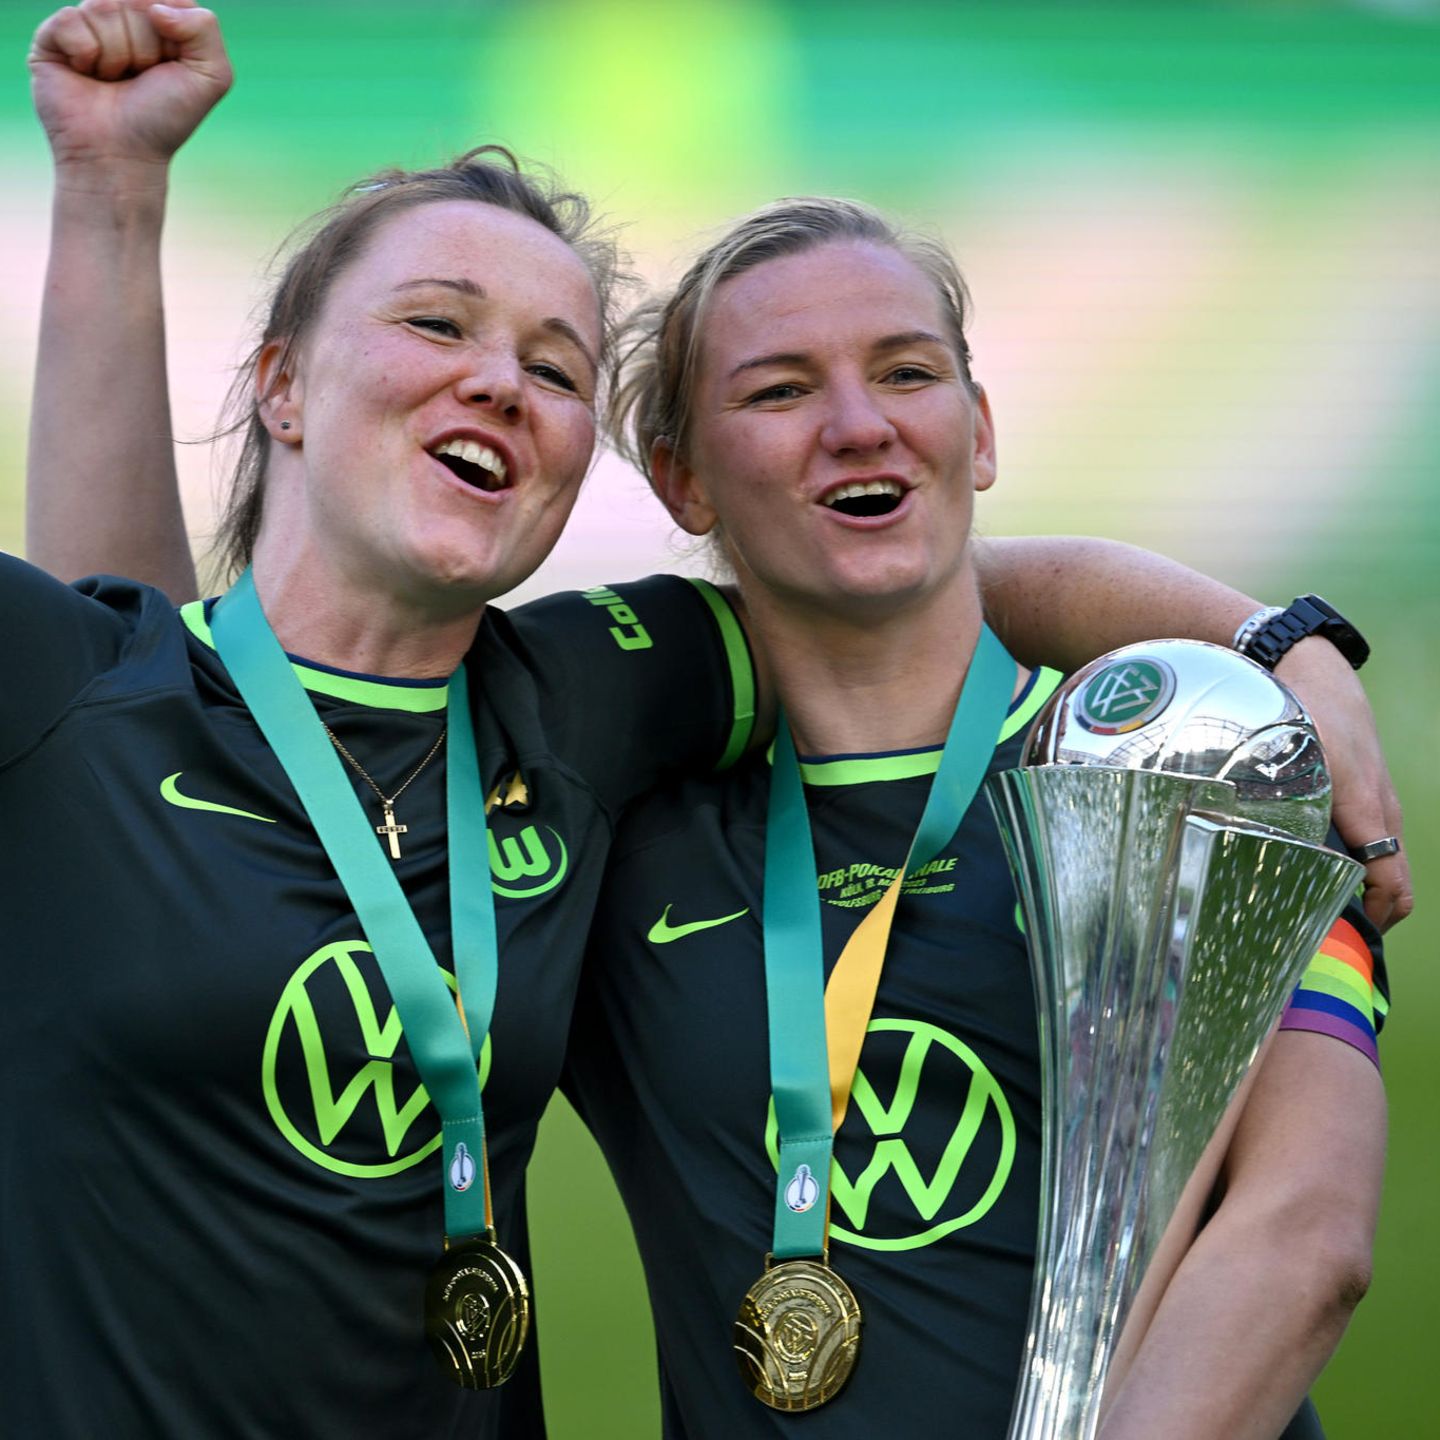 DFb-Pokal Fußballerinnen des VfL Wolfsburg gewinnen gegen SC Freiburg STERN.de